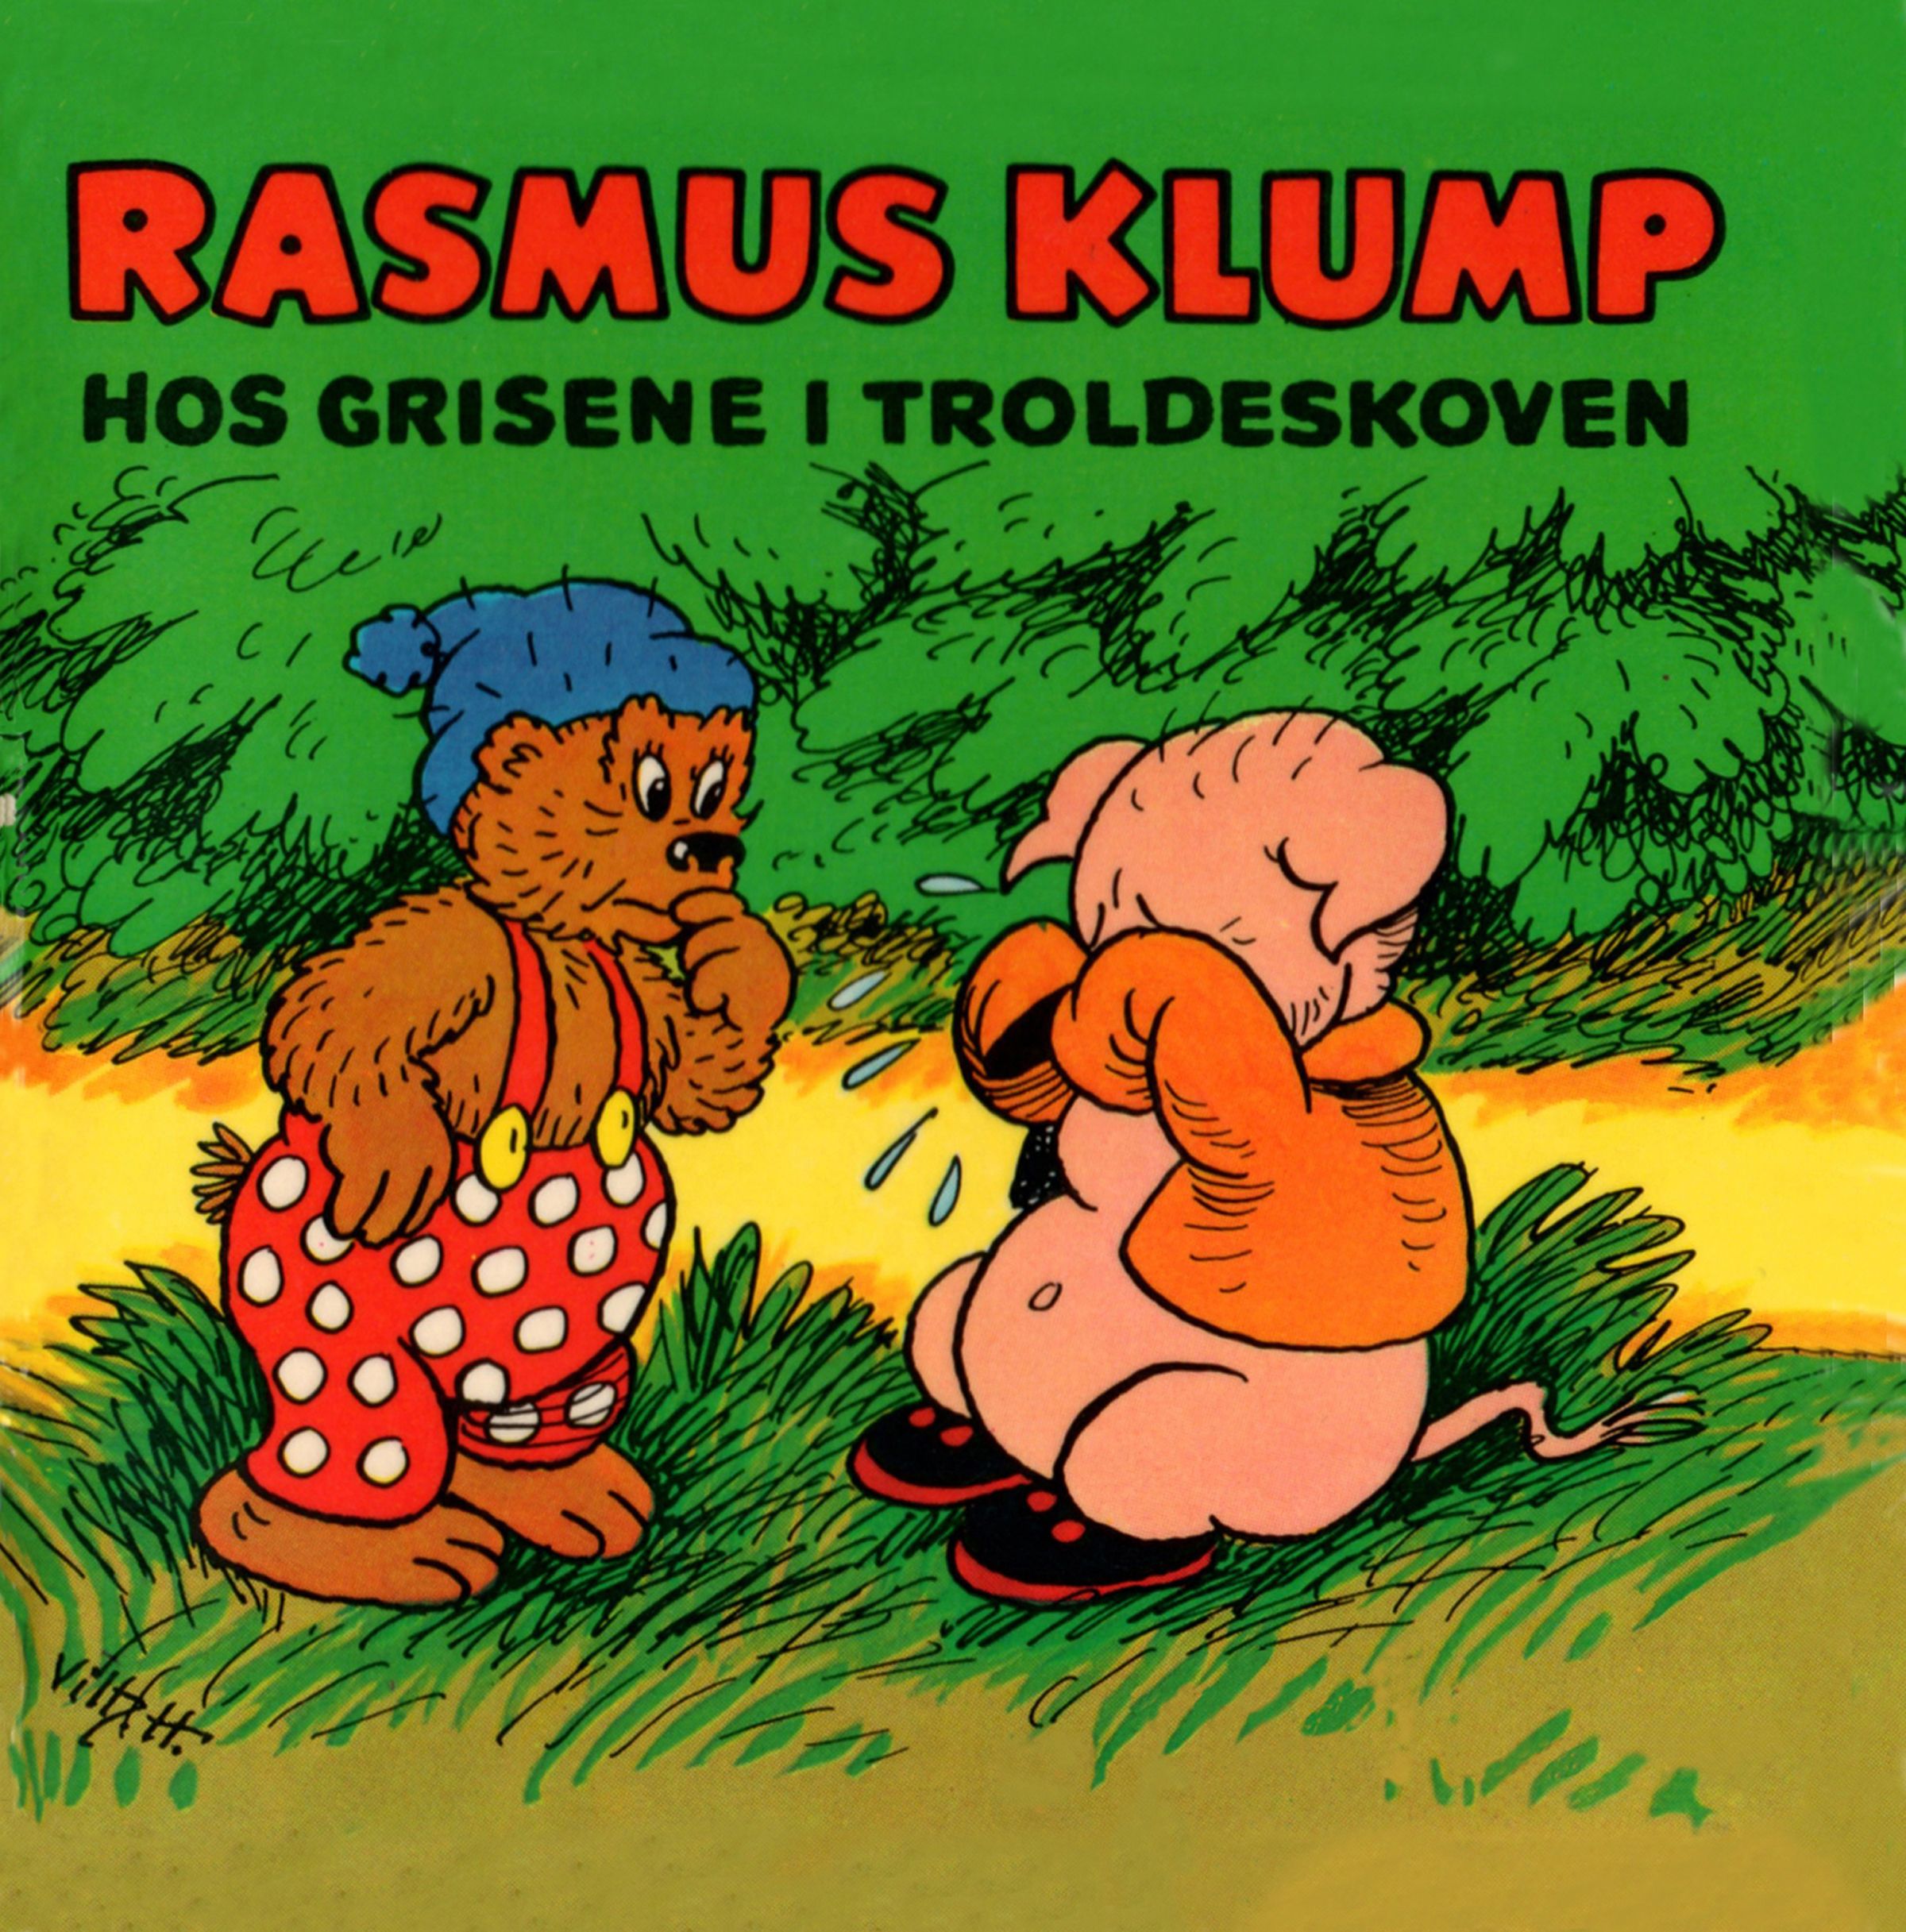 Rasmus Klump hos grisene i troldeskoven, ljudbok av Carla Og Vilh. Hansen